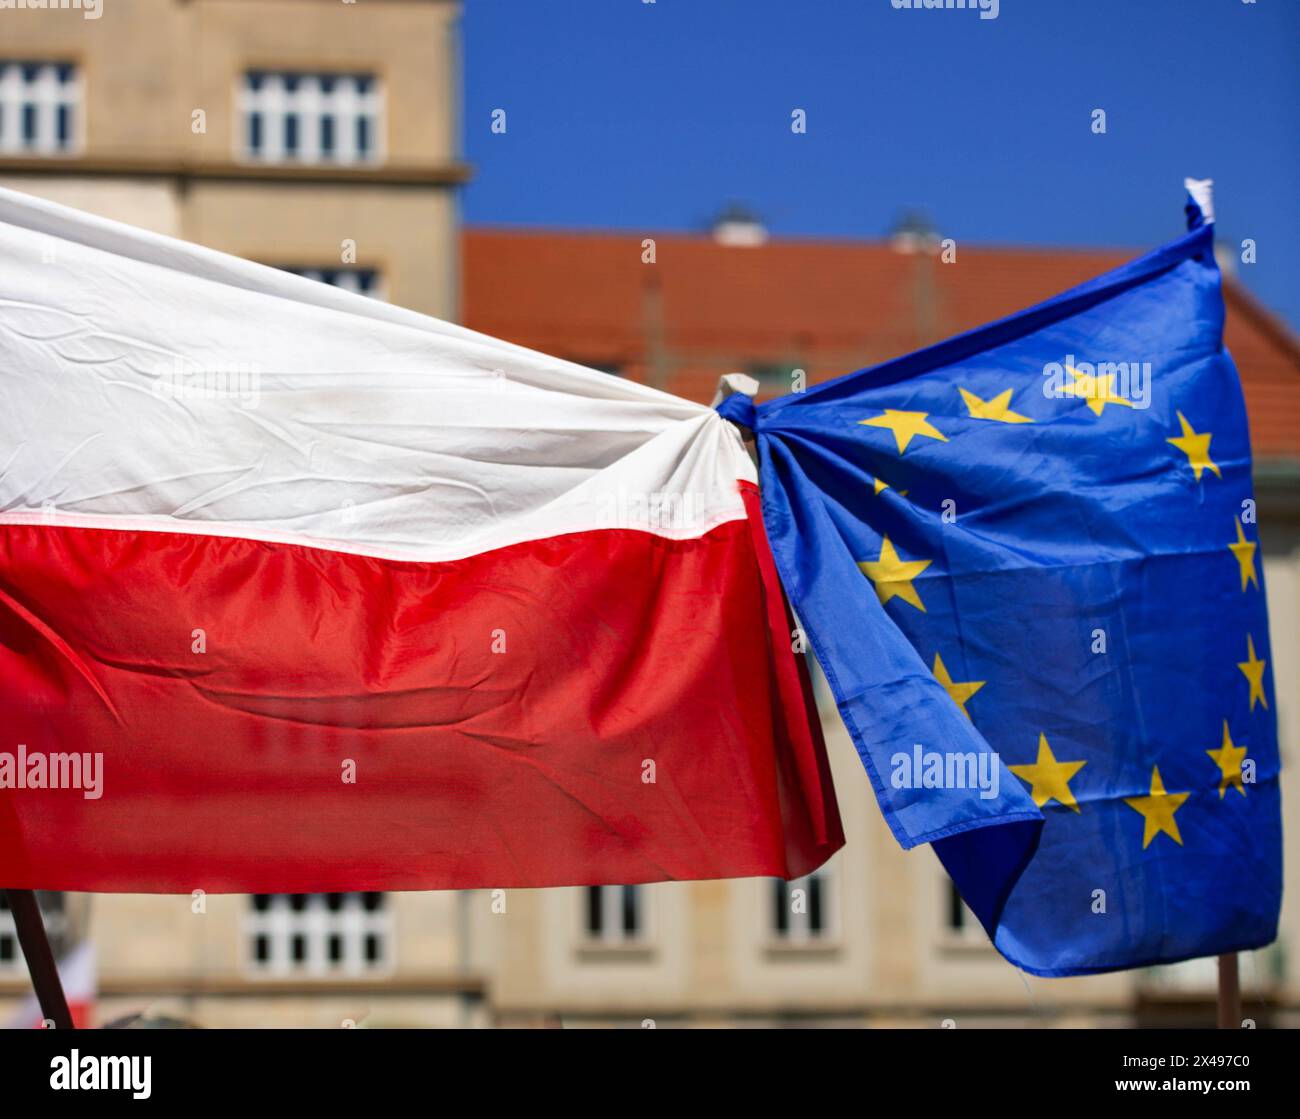 Drapeau national de la Pologne attaché avec le drapeau de l'UE dans le centre-ville contre les bâtiments et le ciel bleu Banque D'Images